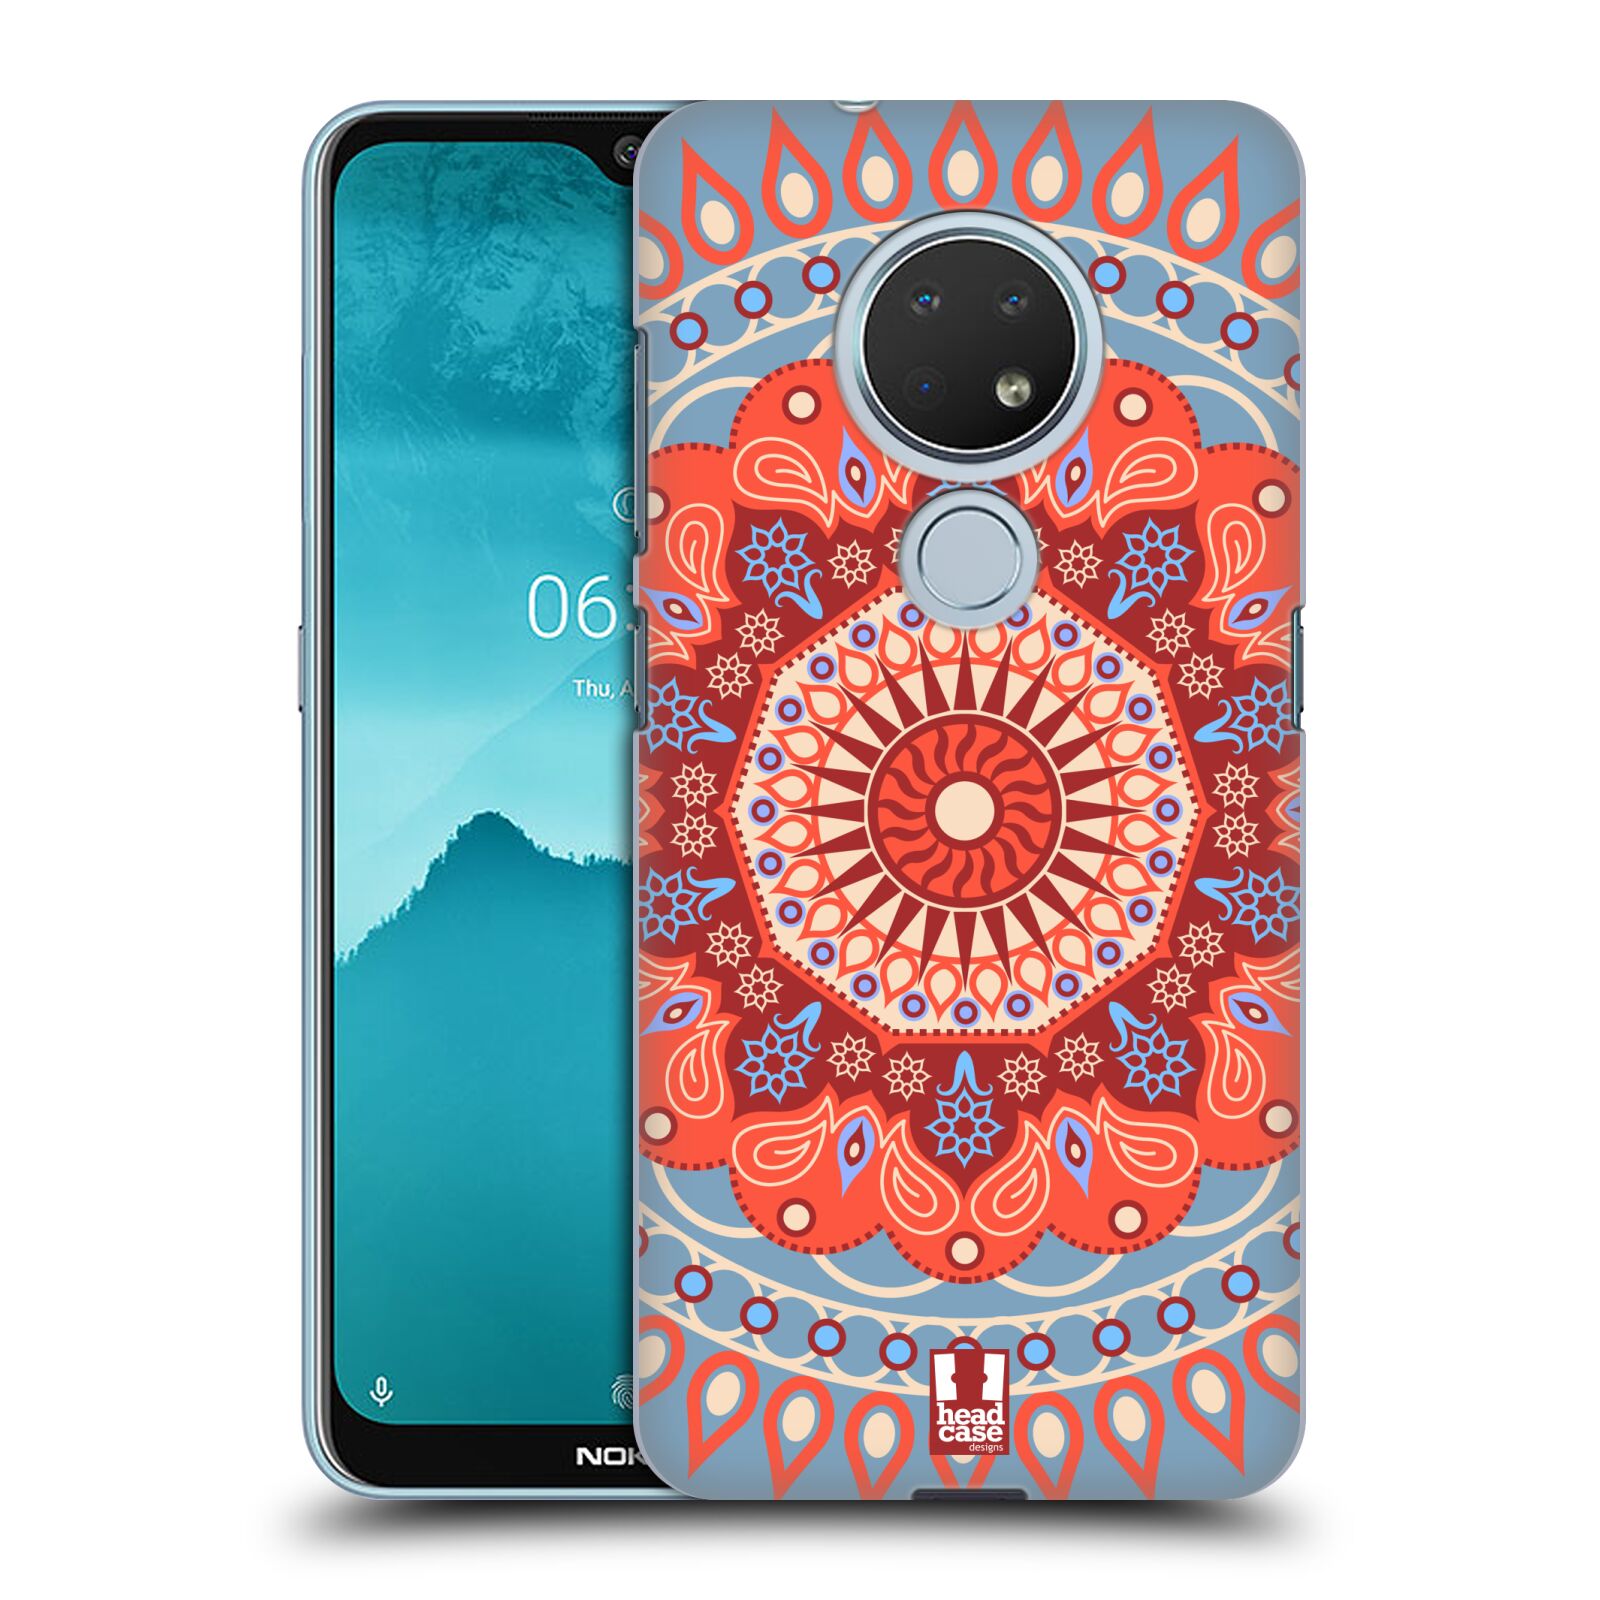 Pouzdro na mobil Nokia 6.2 - HEAD CASE - vzor Indie Mandala slunce barevný motiv ČERVENÁ A MODRÁ